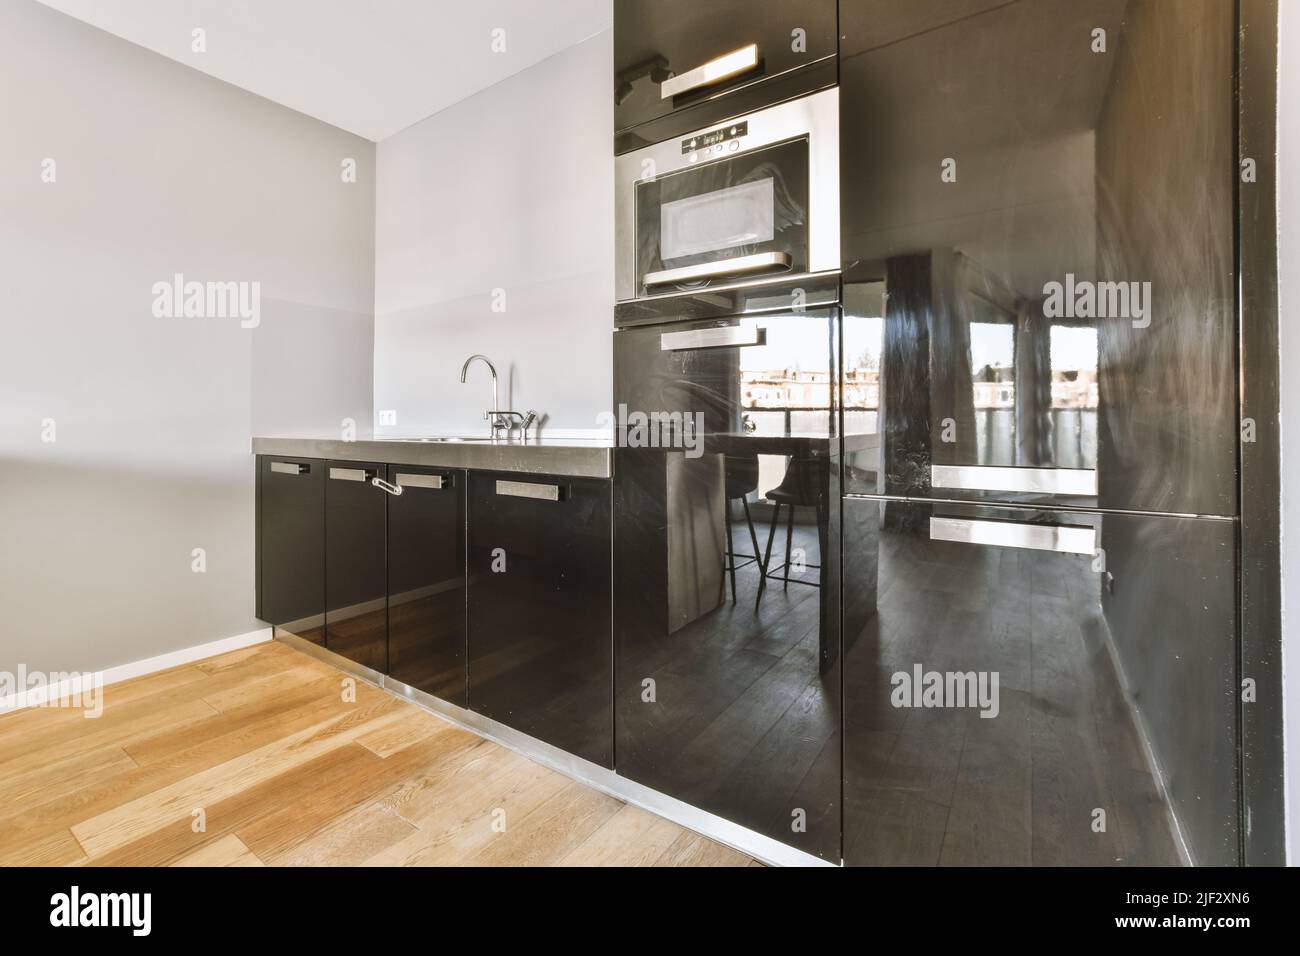 Home Interior Design der modernen Loft-Wohnung mit offener Küche In minimalistischem Stil und geräumiger Essecke mit Tisch und Stühle Stockfoto